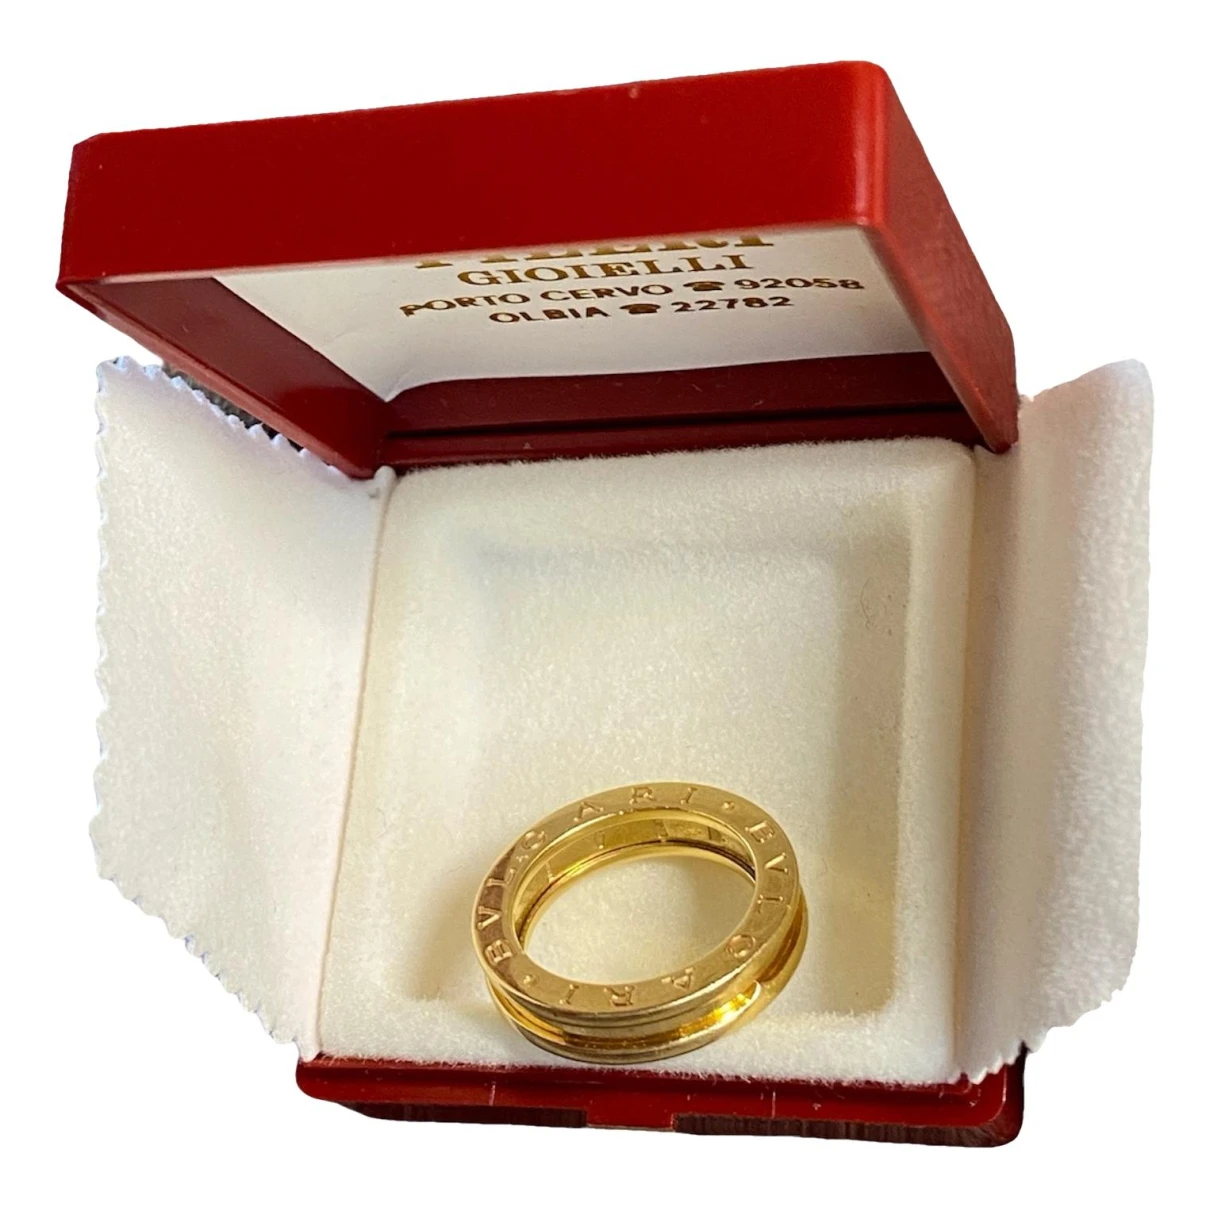 Pre-owned Bvlgari B.zero1 Yellow Gold Ring